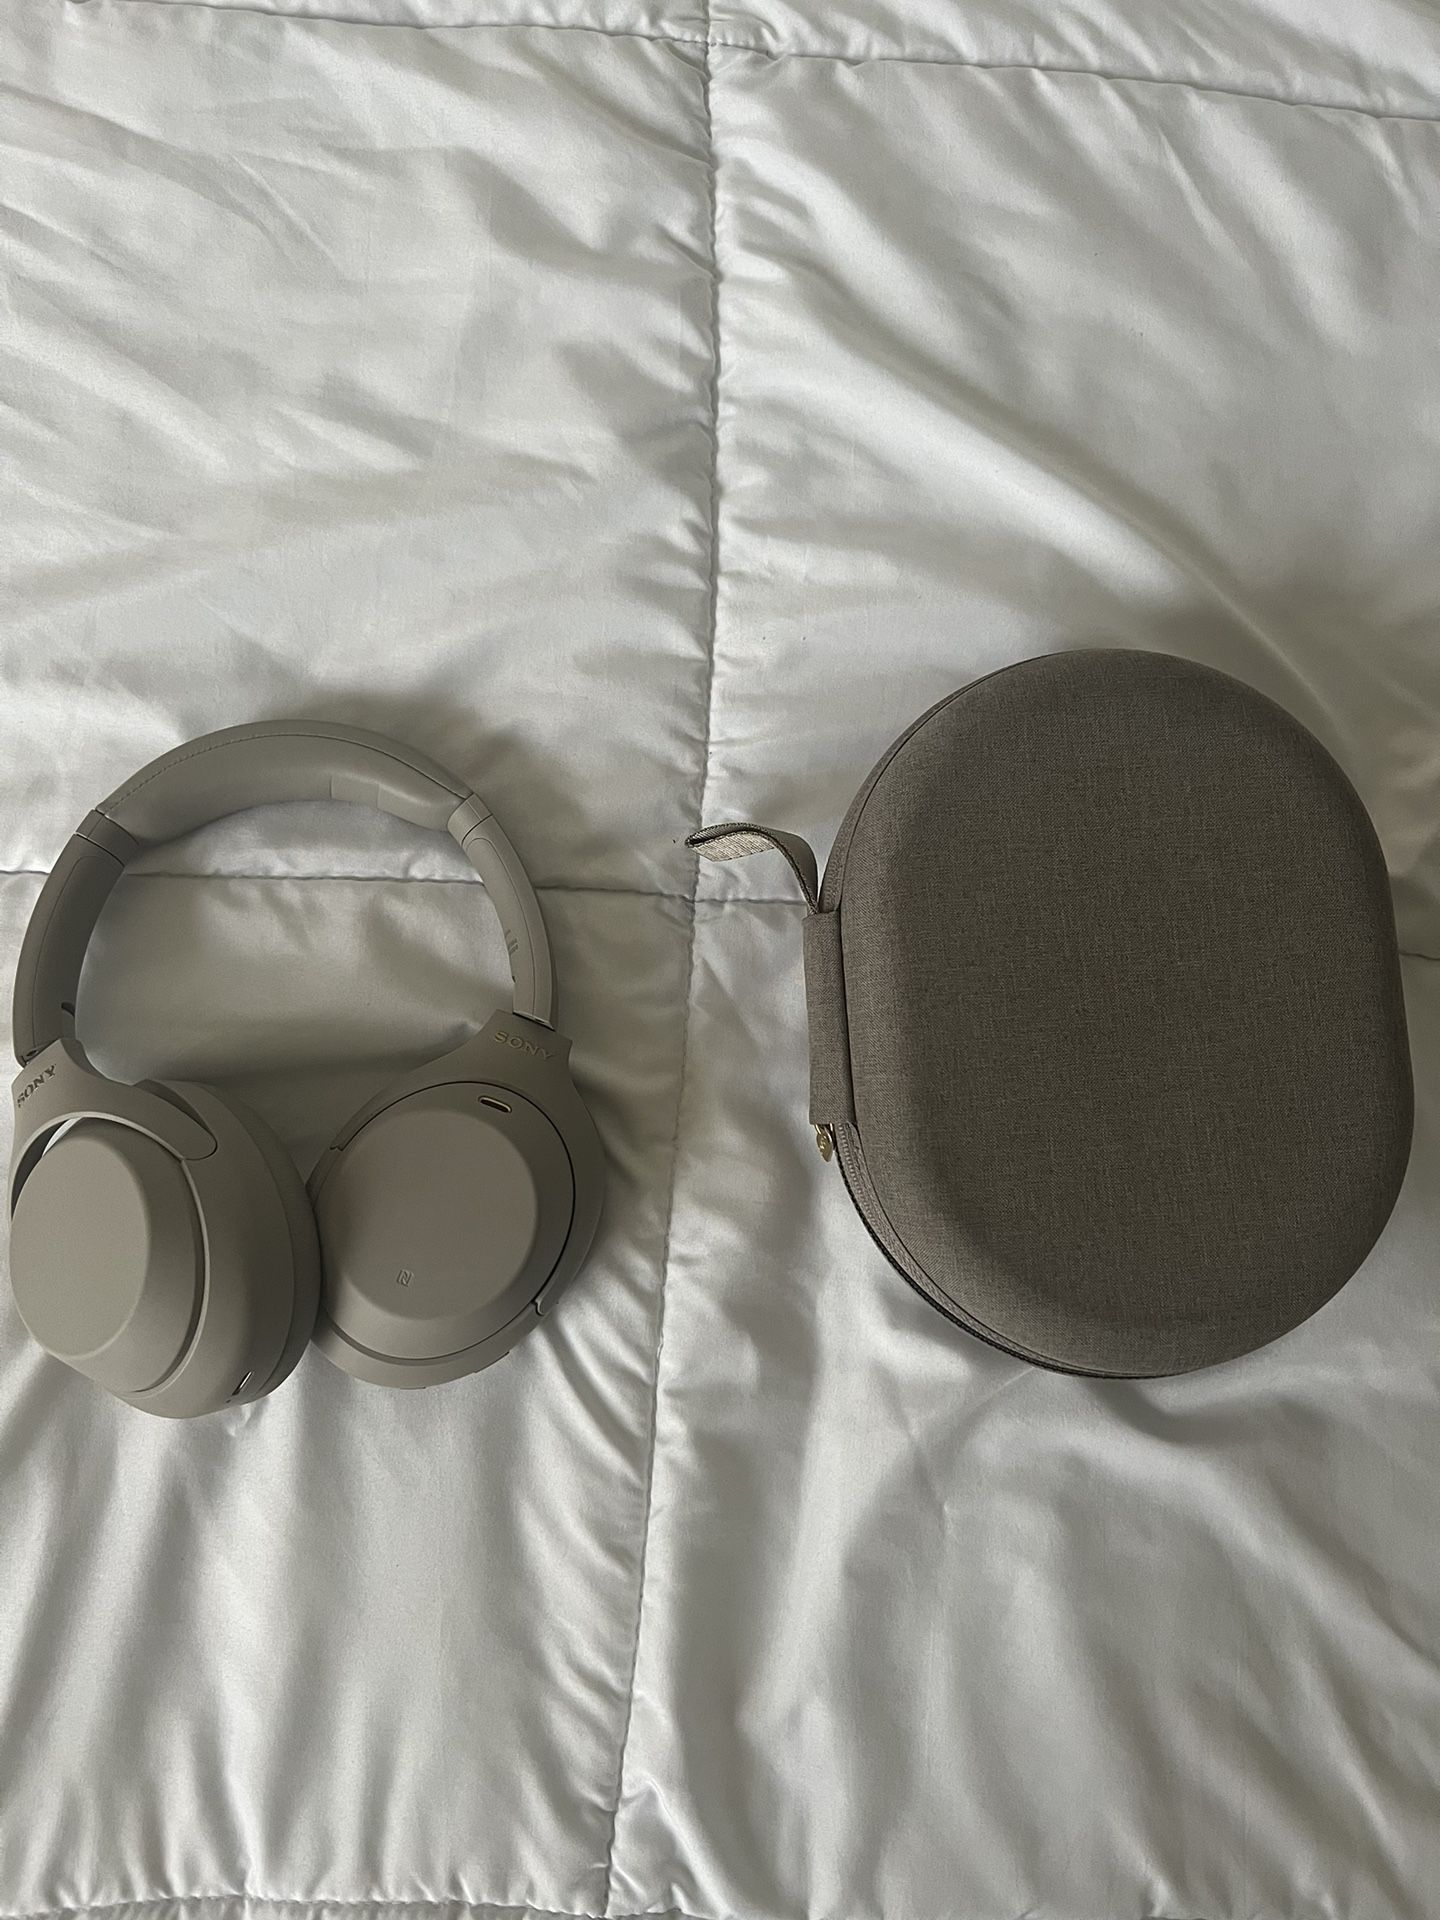 SONY WH-1000XM4 Headphones